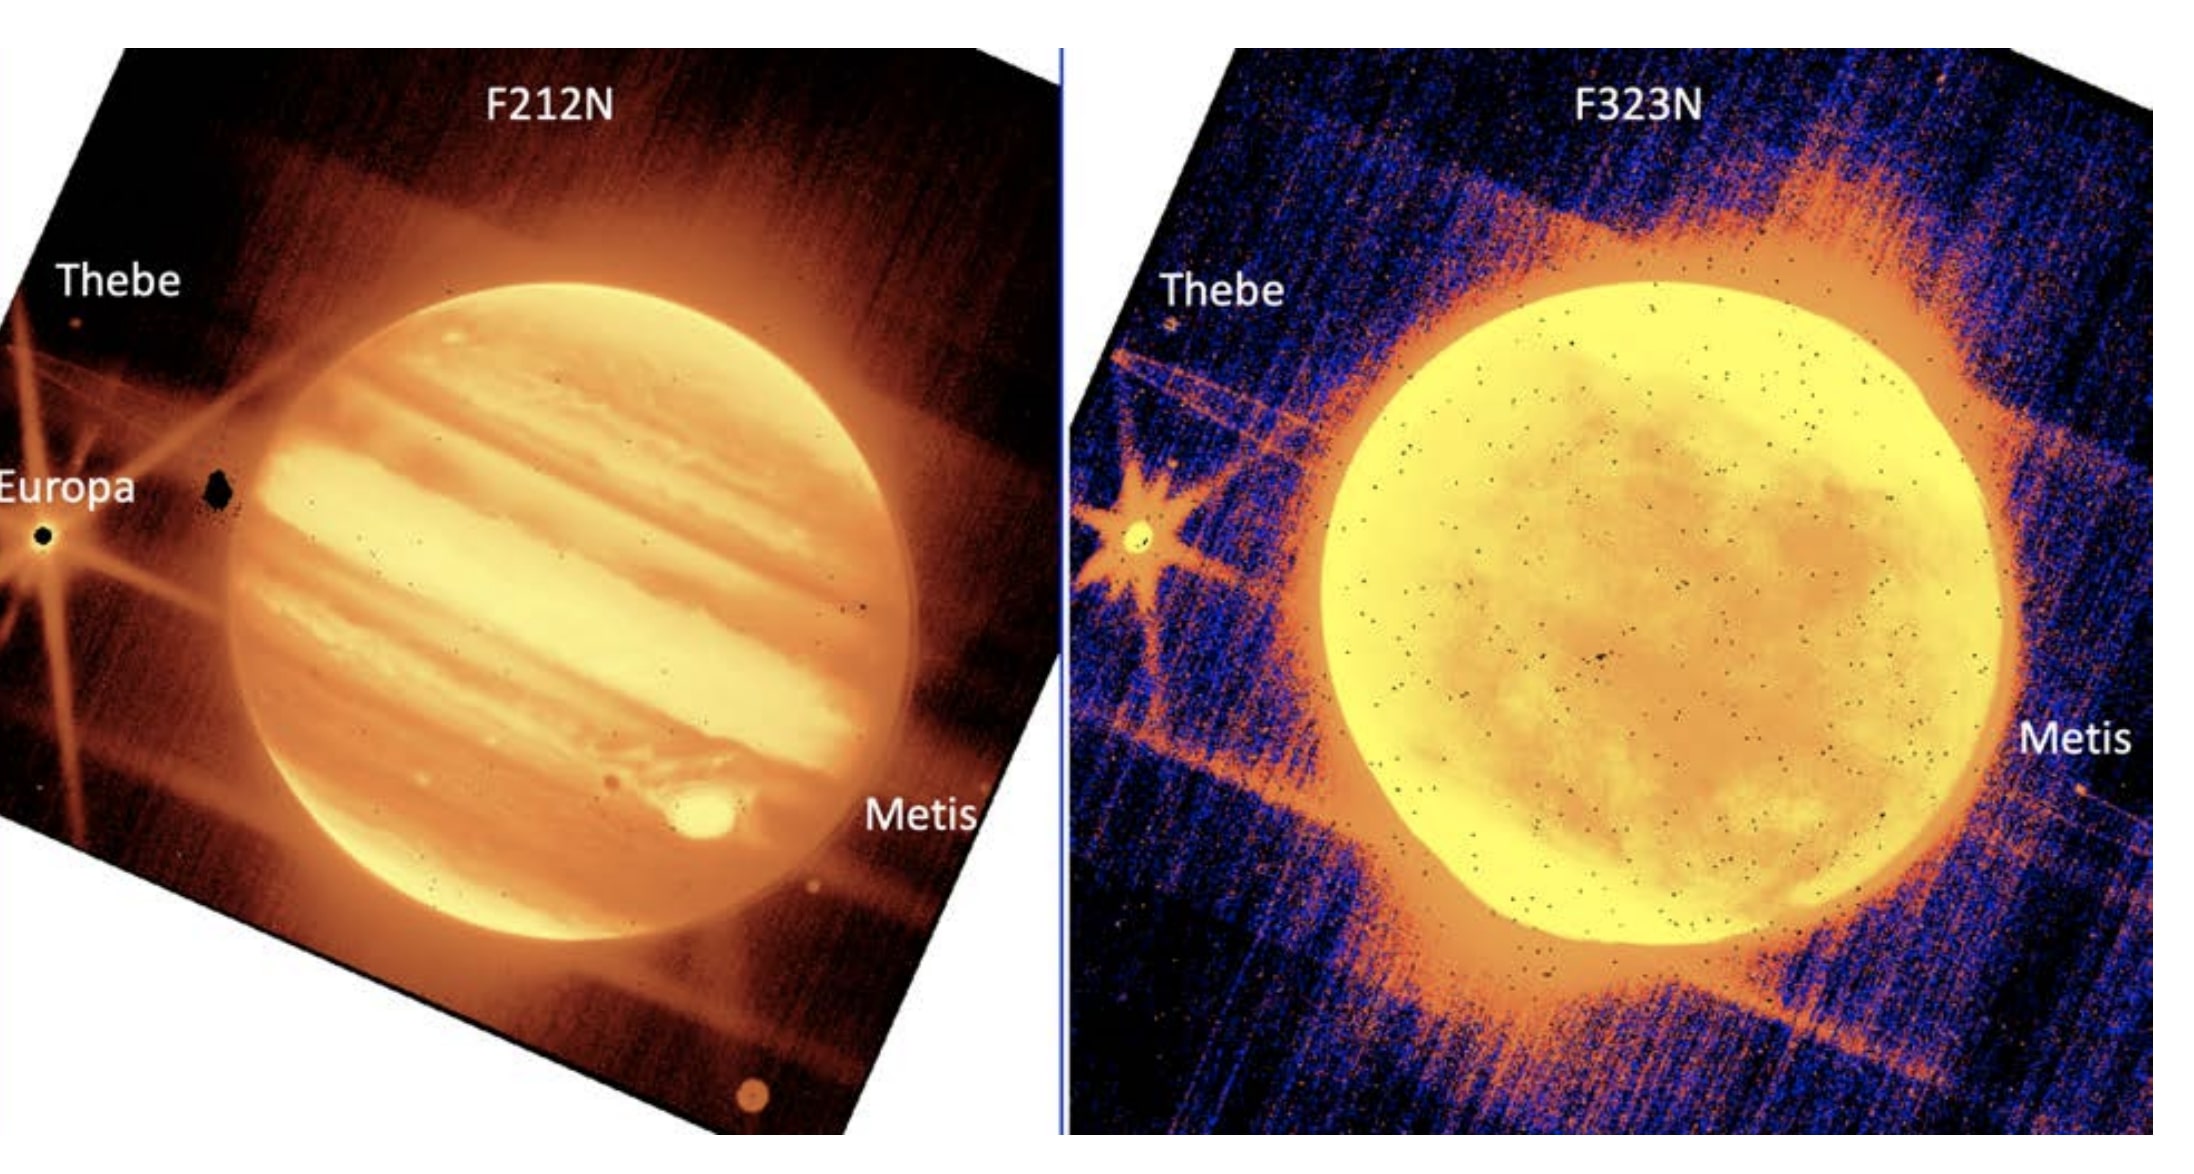 Esquerda: Júpiter, centro, e suas luas Europa, Thebe e Metis são vistos através do filtro NIRCam do instrumento NIRCam de 2,12 mícrons do Telescópio Espacial James Webb.  Direita: Júpiter e Europa, Tebe e Métis são vistos através do filtro de 3,23 mícrons da NIRCam. 